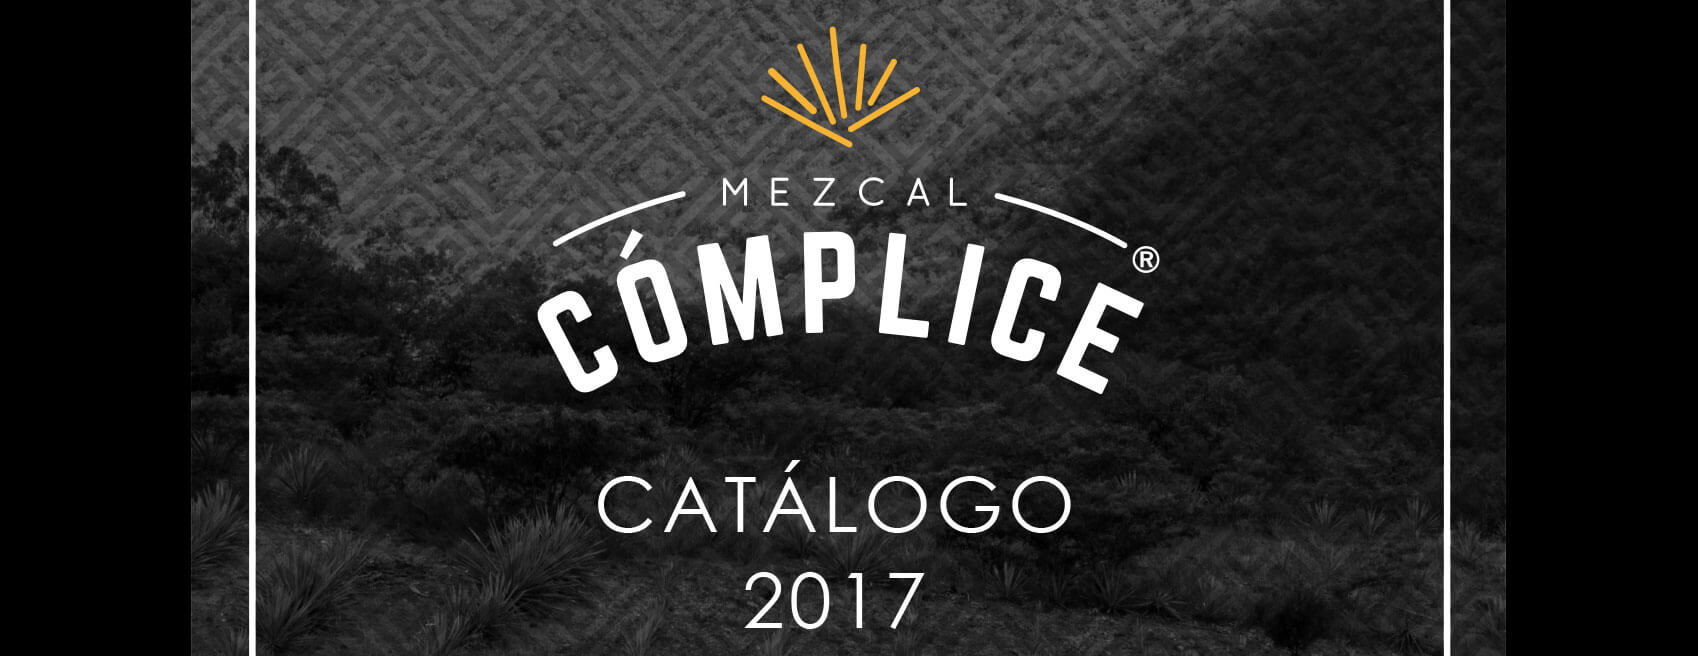 Mezcal Cómplice – Catálogo 2017